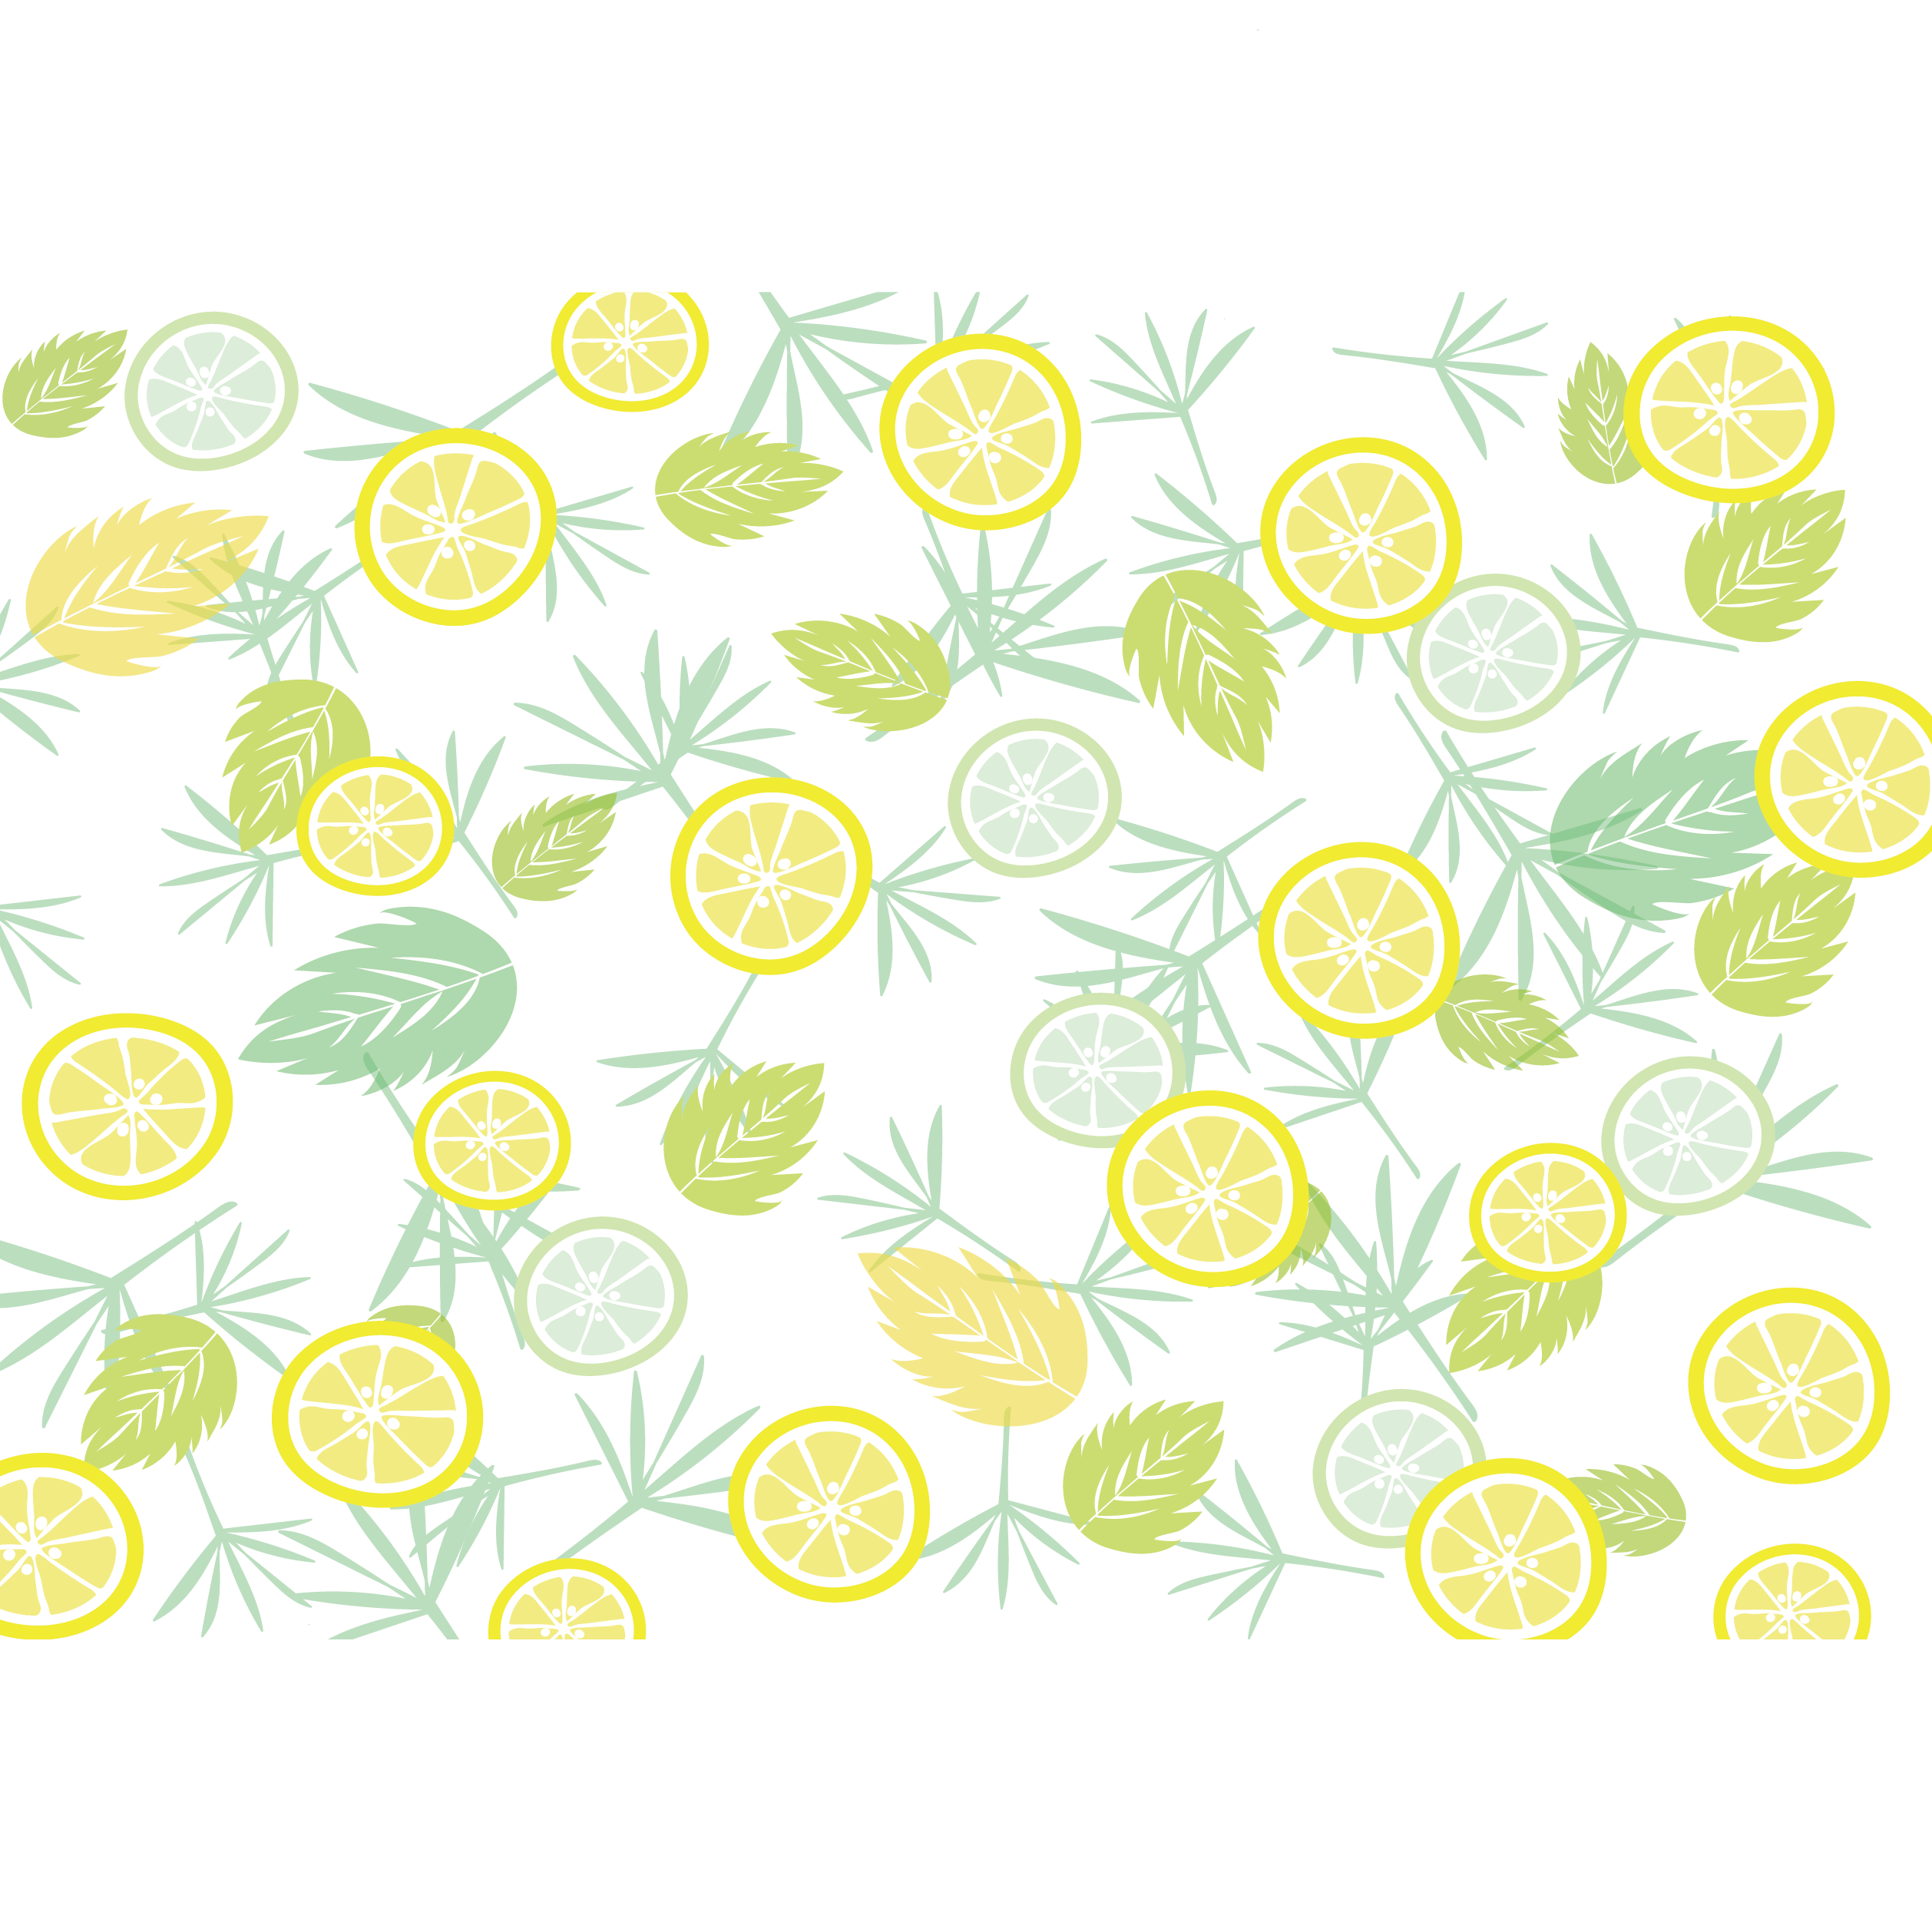 爽やかな葉っぱとレモンとライムのイラスト デザイン素材 背景 商用フリー 無料 のイラスト素材なら イラストマンション